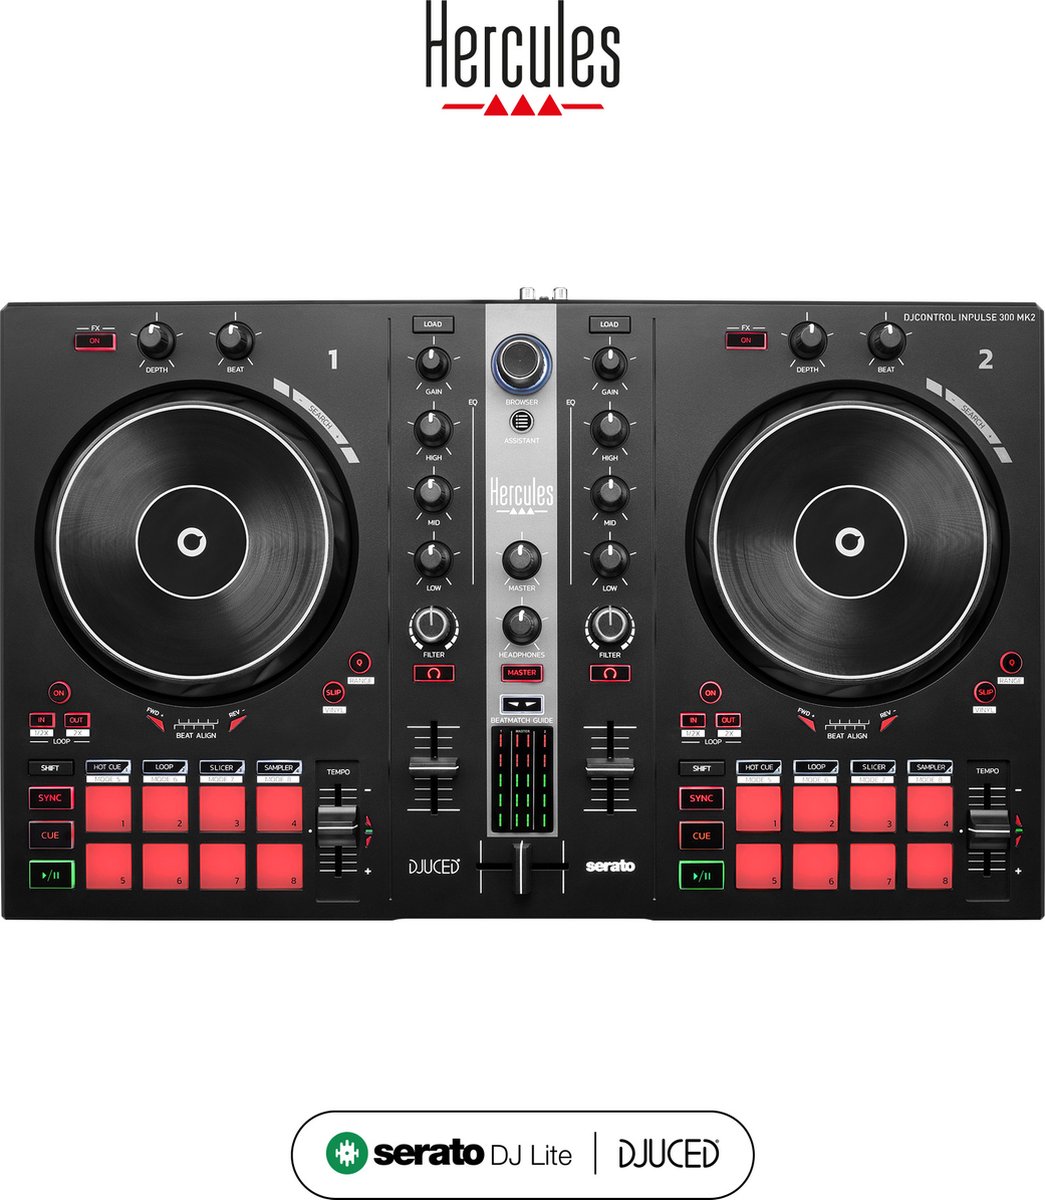 Hercules DJControl Inpulse 300 MK2 – USB dj-controller – 2 decks met 16 pads en ingebouwde geluidskaart – dj-software en handleidingen inbegrepen - Begin eenvoudig met mixen - Beatmatch Guide - Mix met MP3 tracks of van muziekstreamingdiensten - Hercules